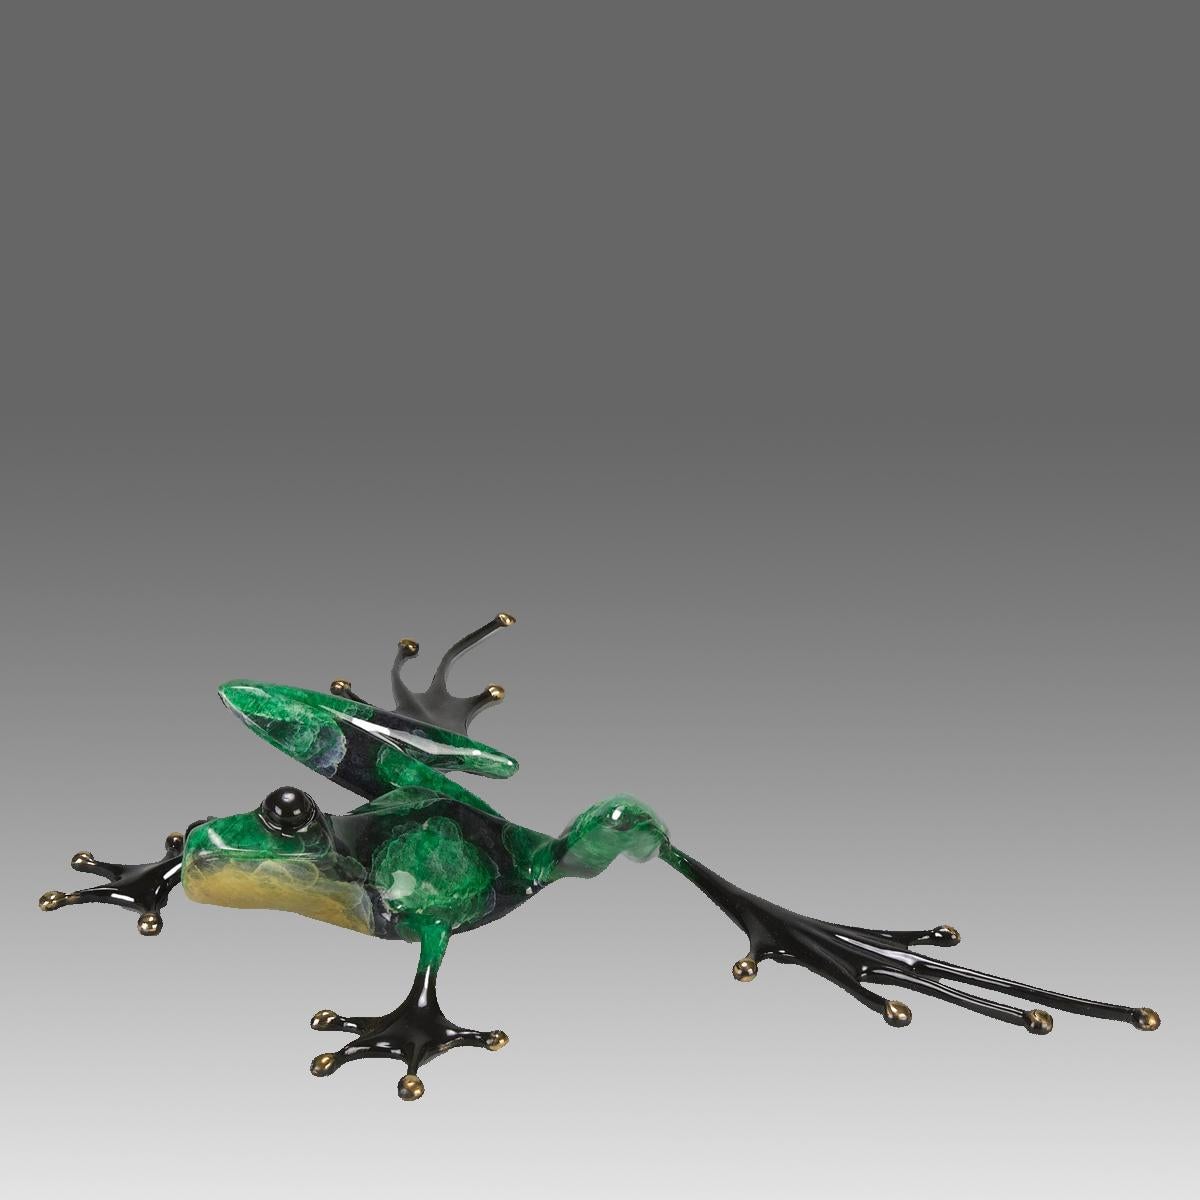 Eine attraktive Bronzestudie in limitierter Auflage, die einen grünen Frosch in gestreckter Haltung mit erhobenem Kopf zeigt, mit sehr feinen Emailfarben und ausgezeichneter taktiler Oberfläche, signiert Tim, nummeriert 817/5000 und